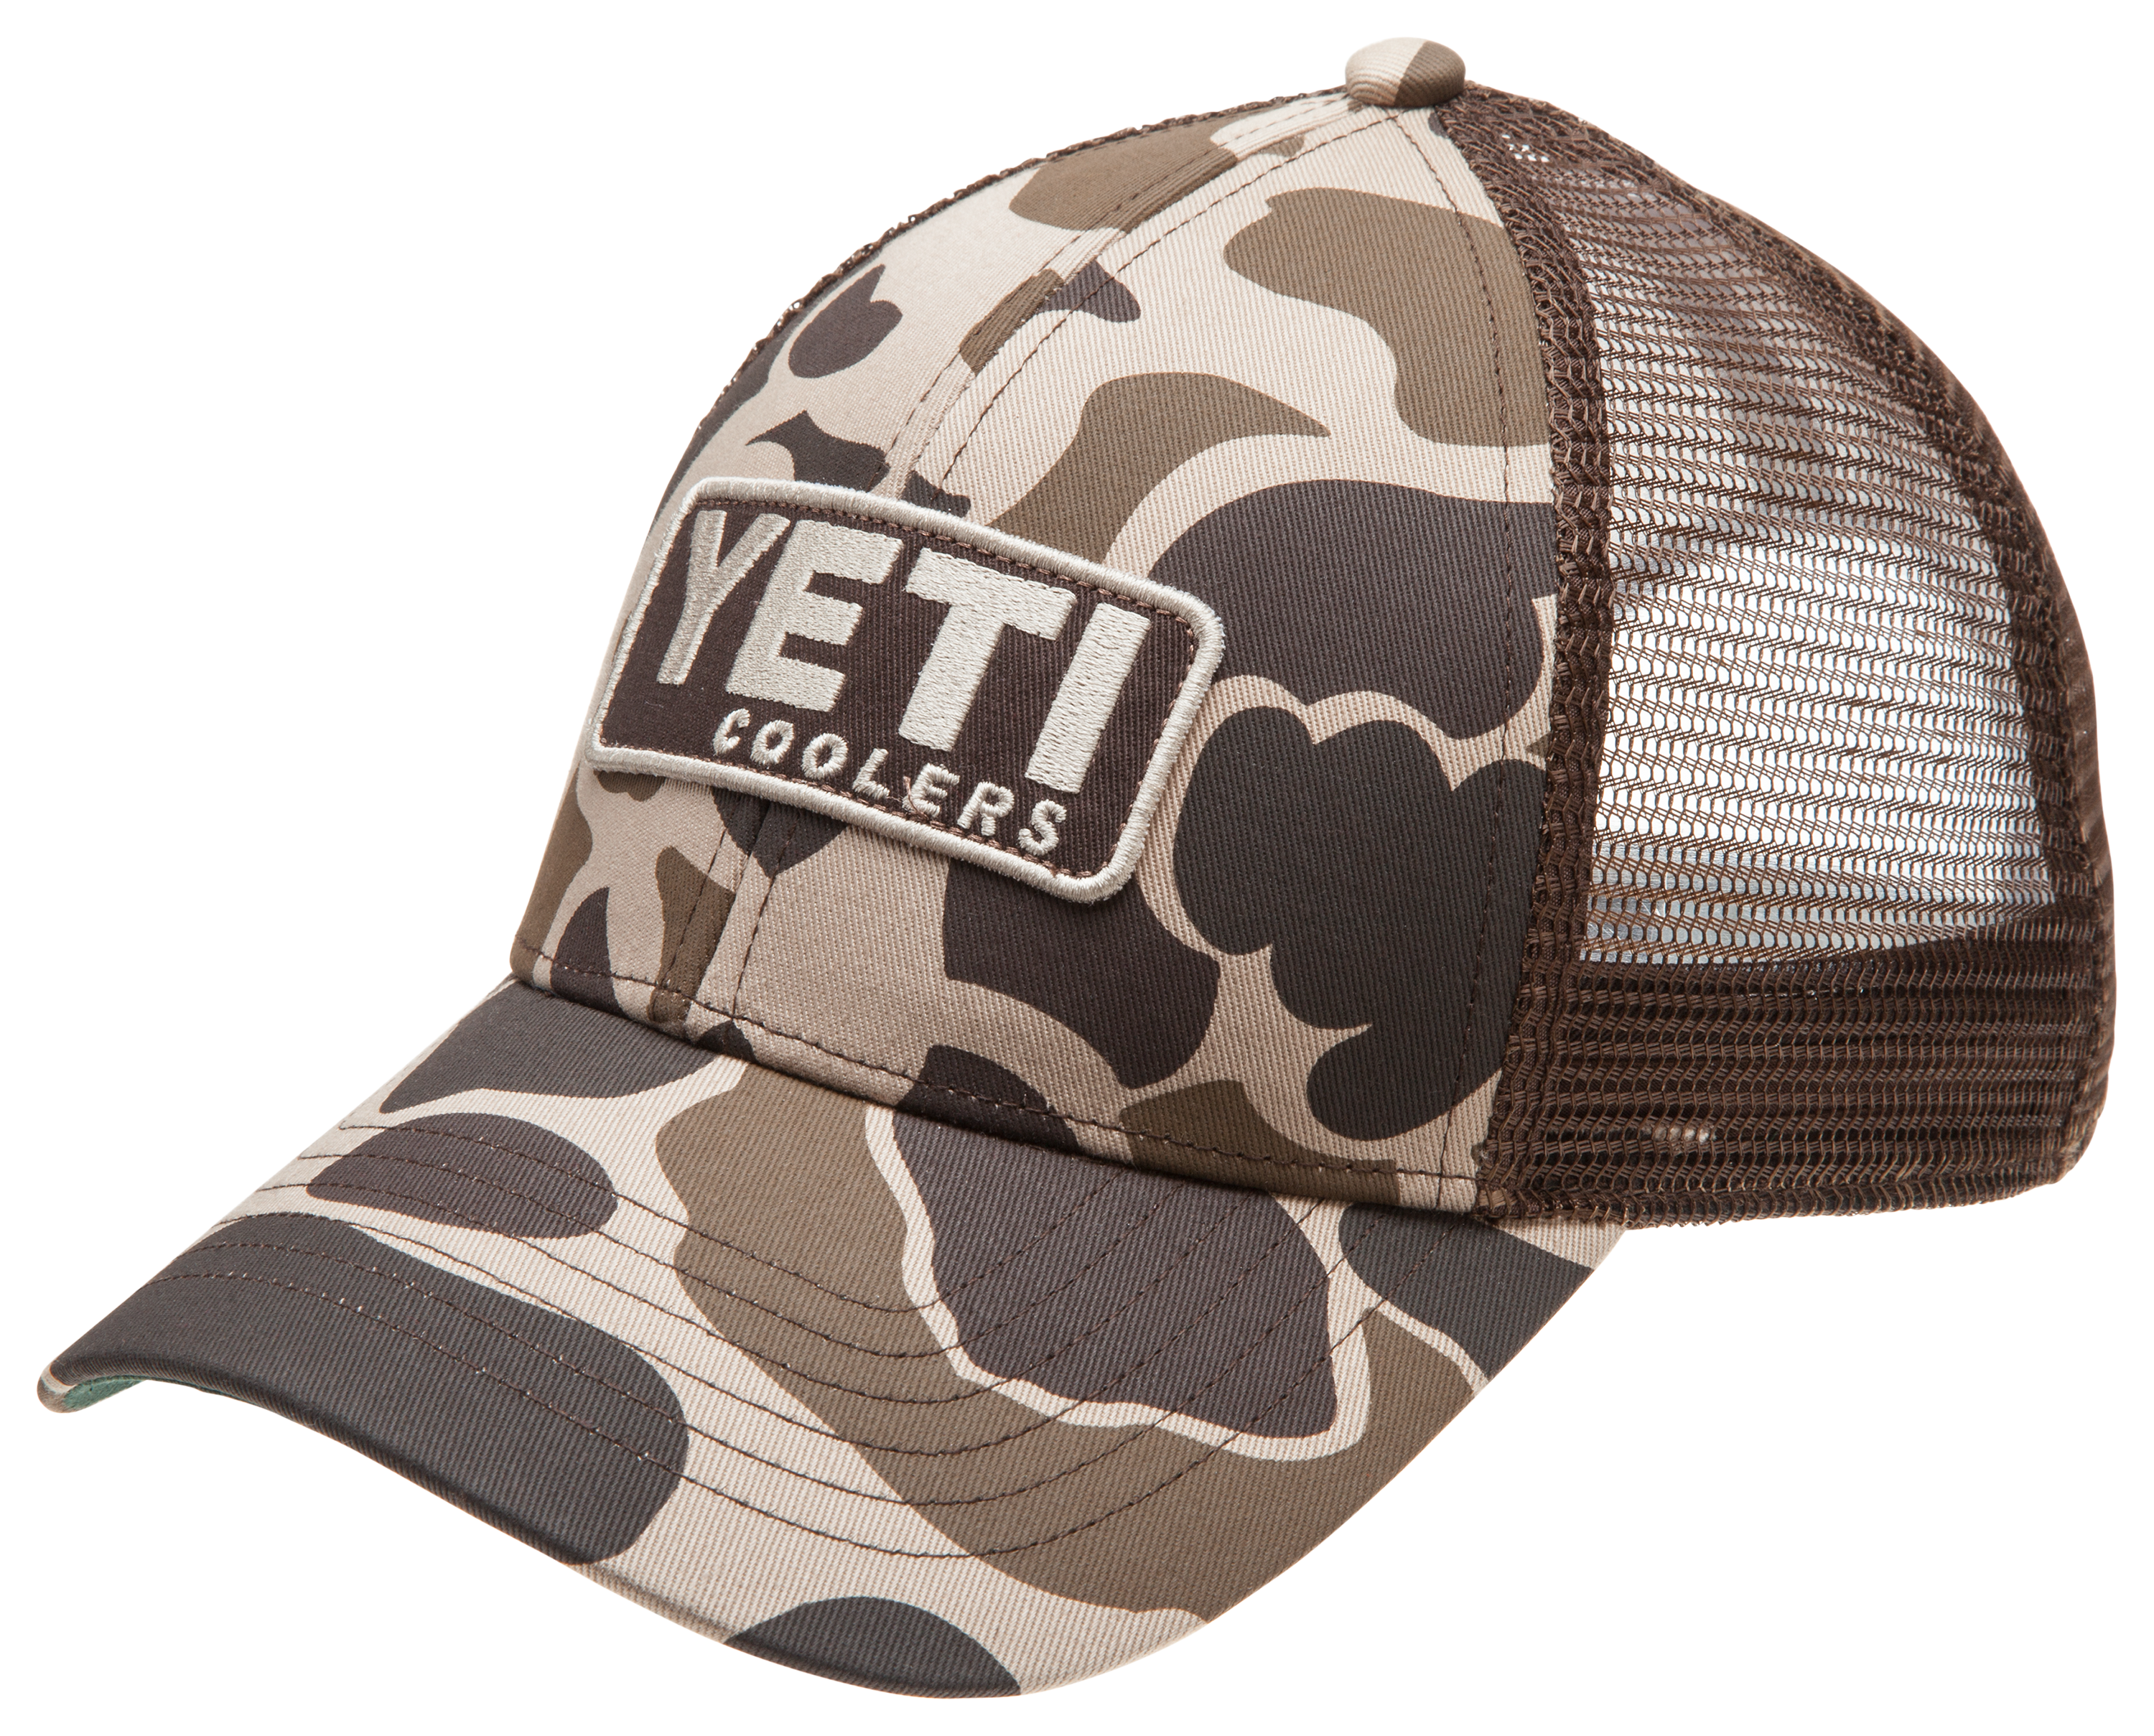 YETI Logo Full Camo Trucker Hat